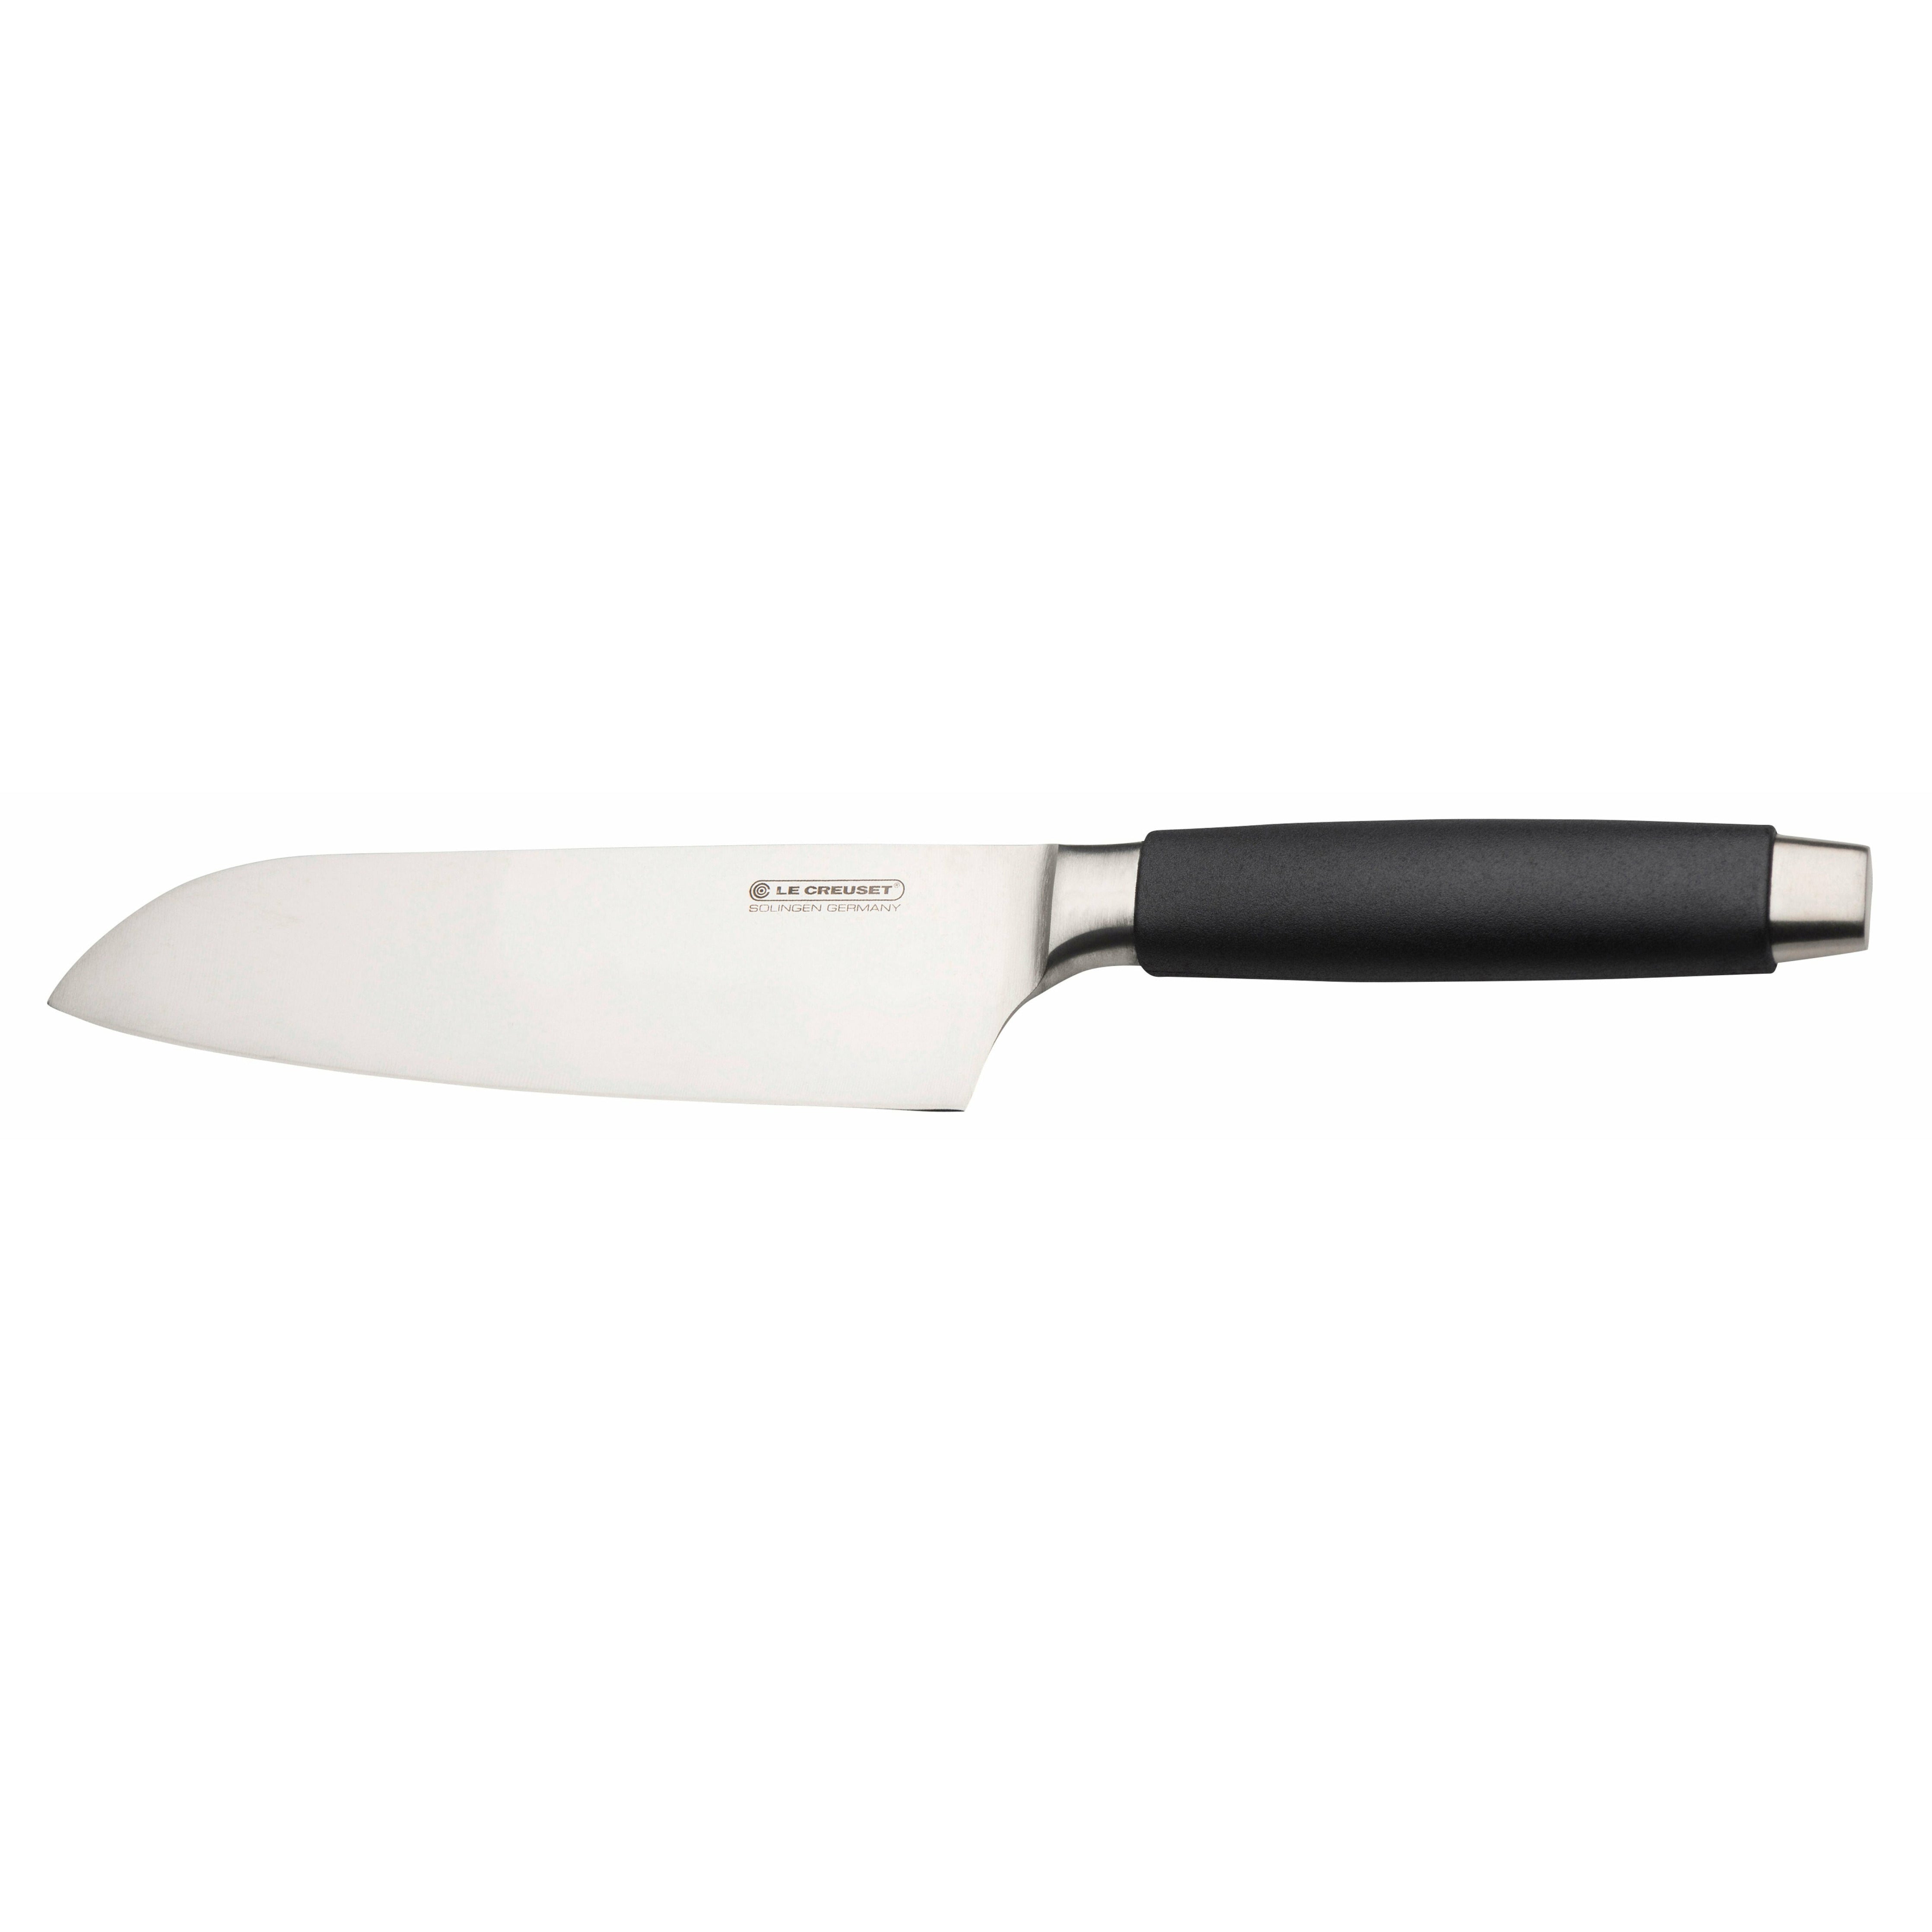 Le Creuset Santoku Knife Standard med svart håndtak, 18 cm